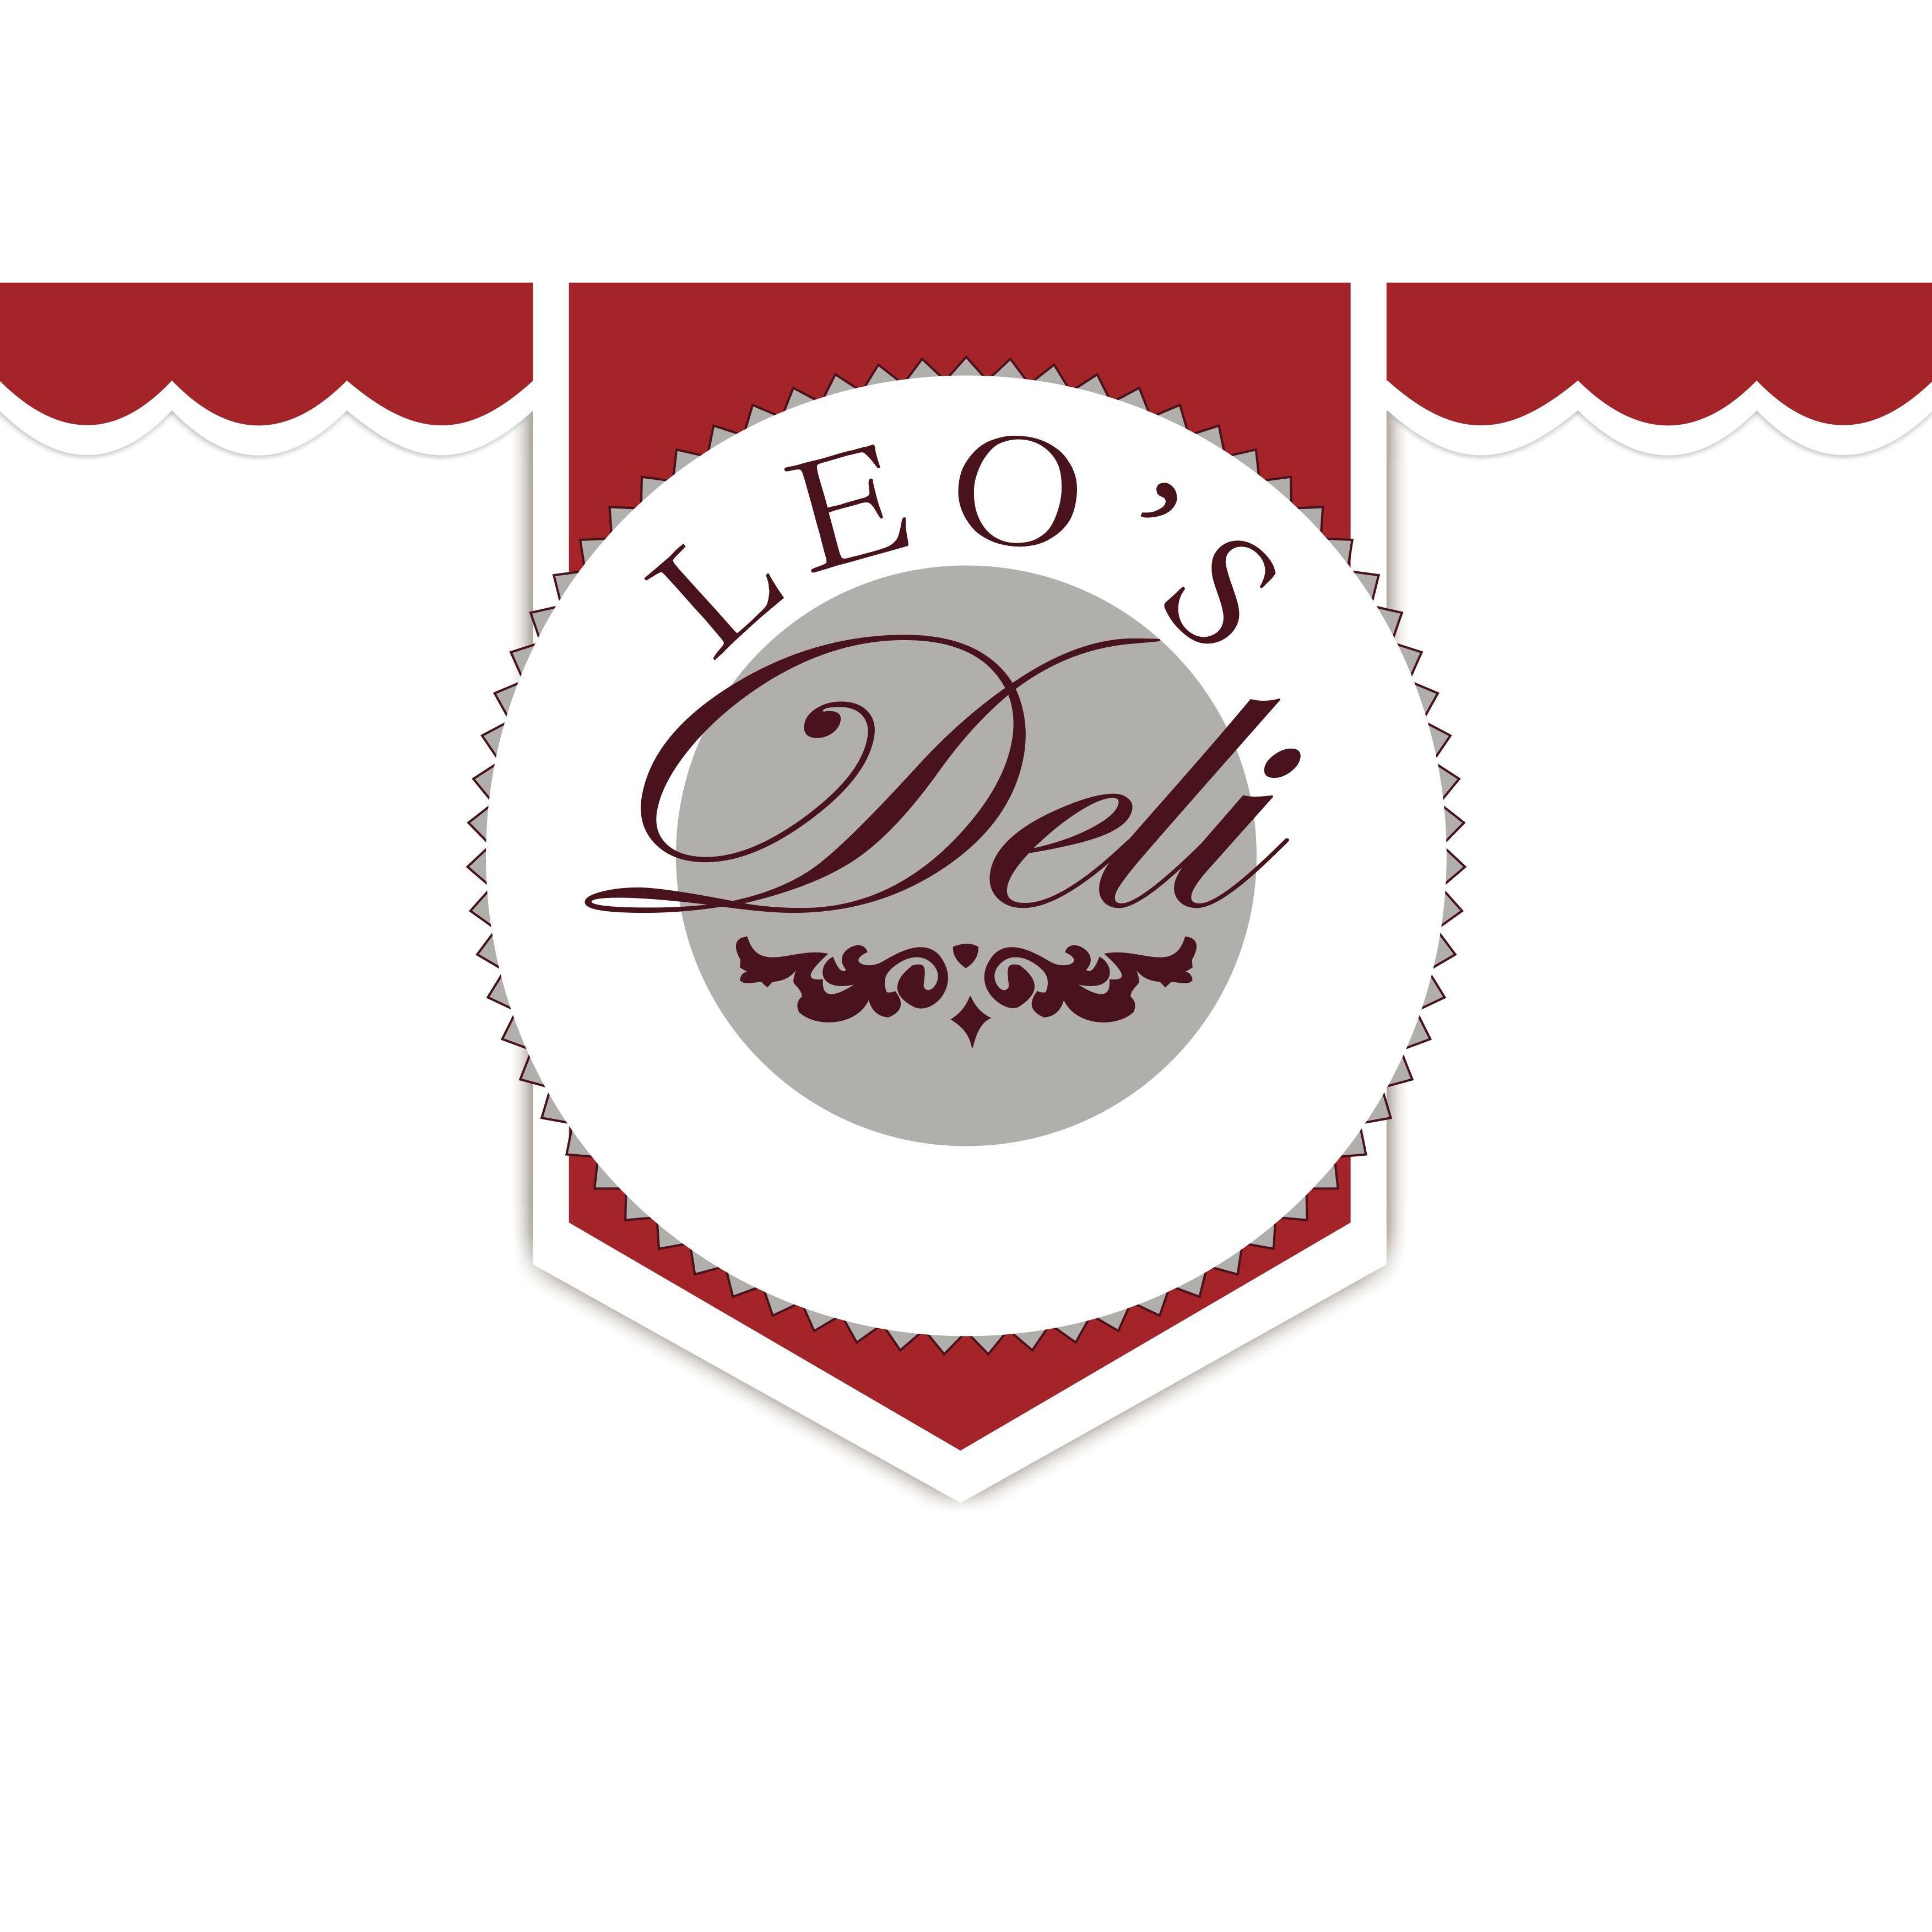 Leo's Deli Logo